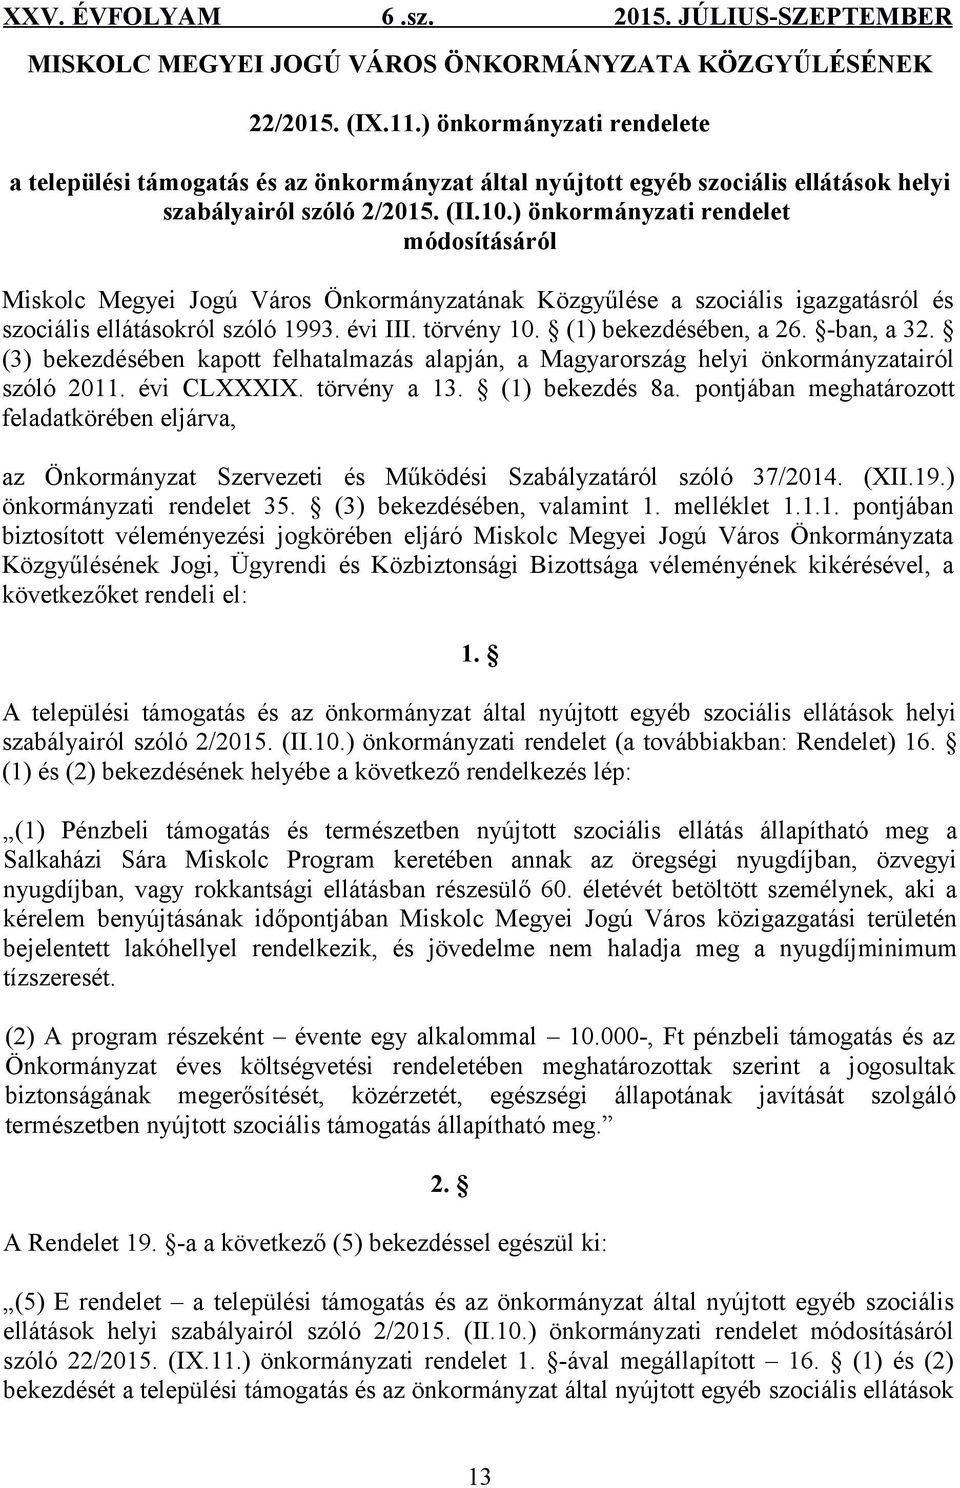 ) önkormányzati rendelet módosításáról Miskolc Megyei Jogú Város Önkormányzatának Közgyűlése a szociális igazgatásról és szociális ellátásokról szóló 1993. évi III. törvény 10. (1) bekezdésében, a 26.